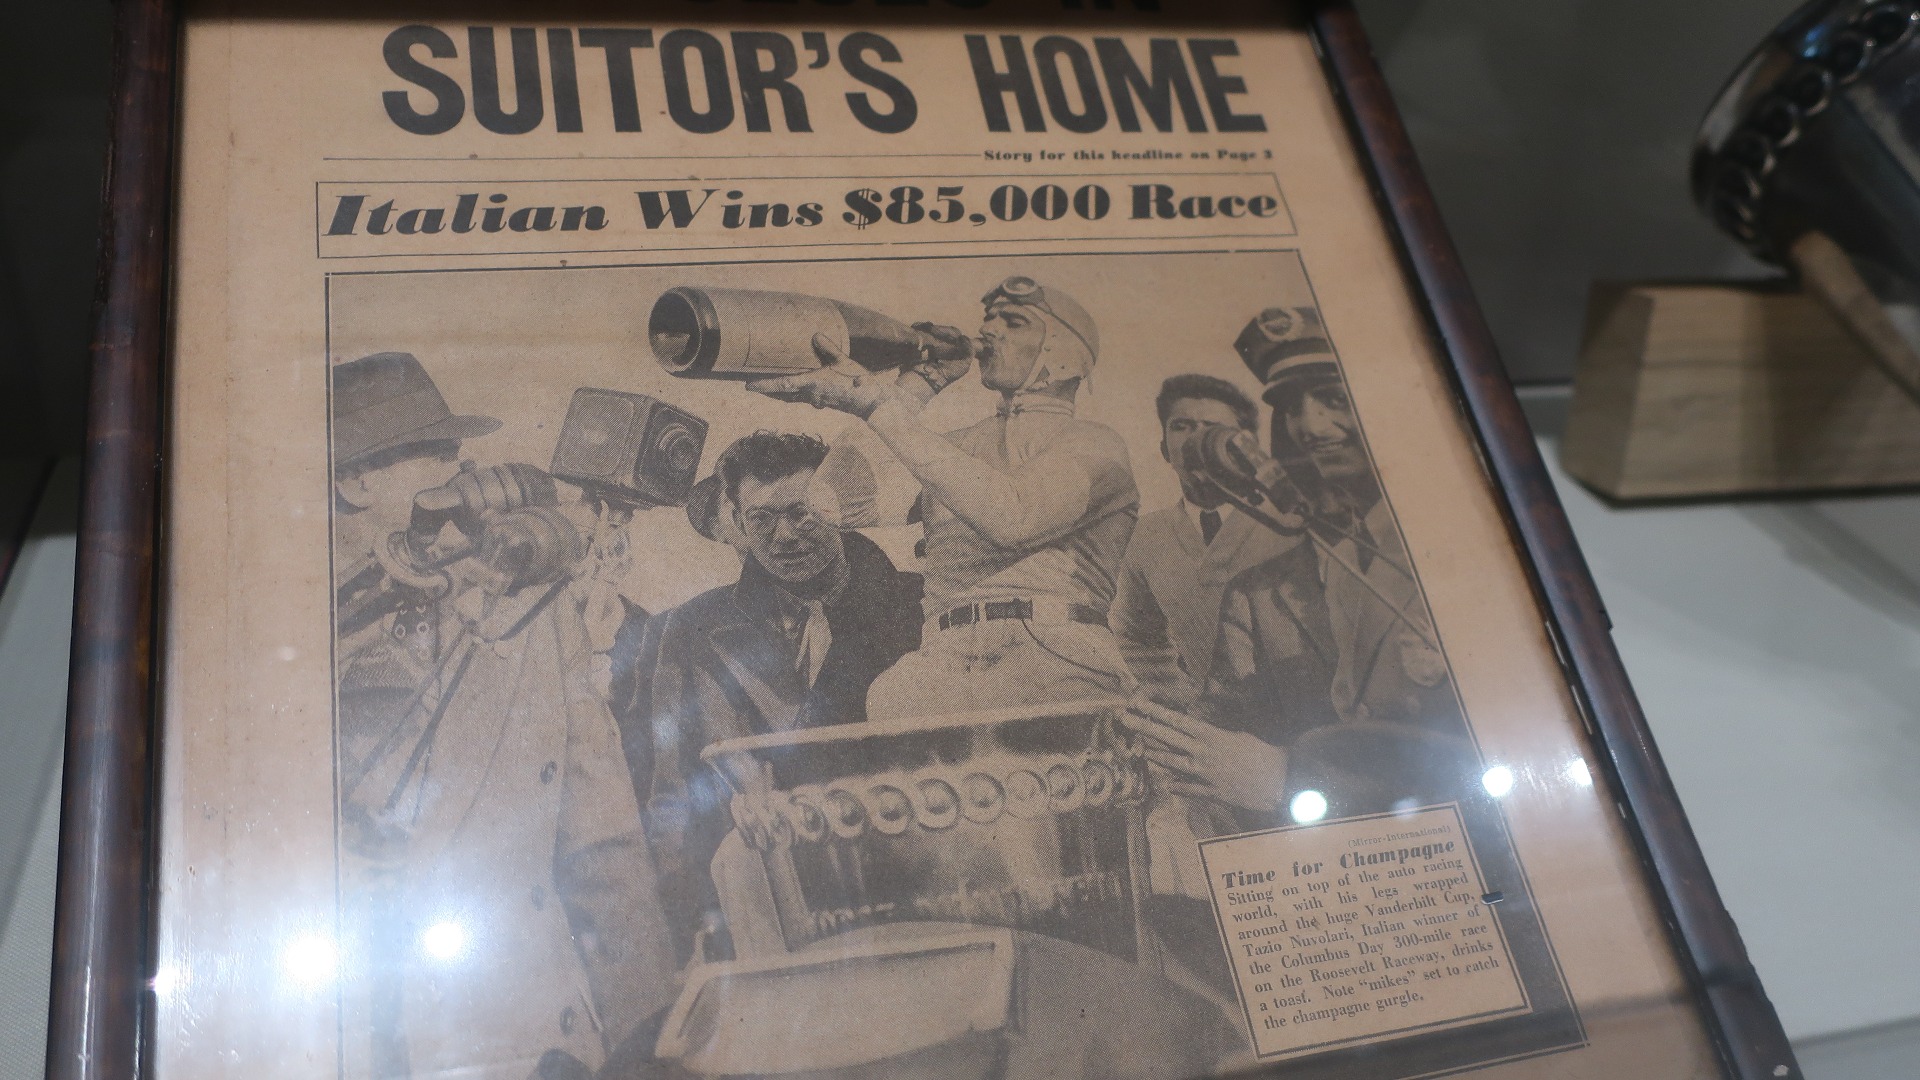 Nuvolari tok turen til det prestisjetunge Vanderbilt Cup løpet i USA, og der skrev avisene simpelthen Italian wins $85.000 race.